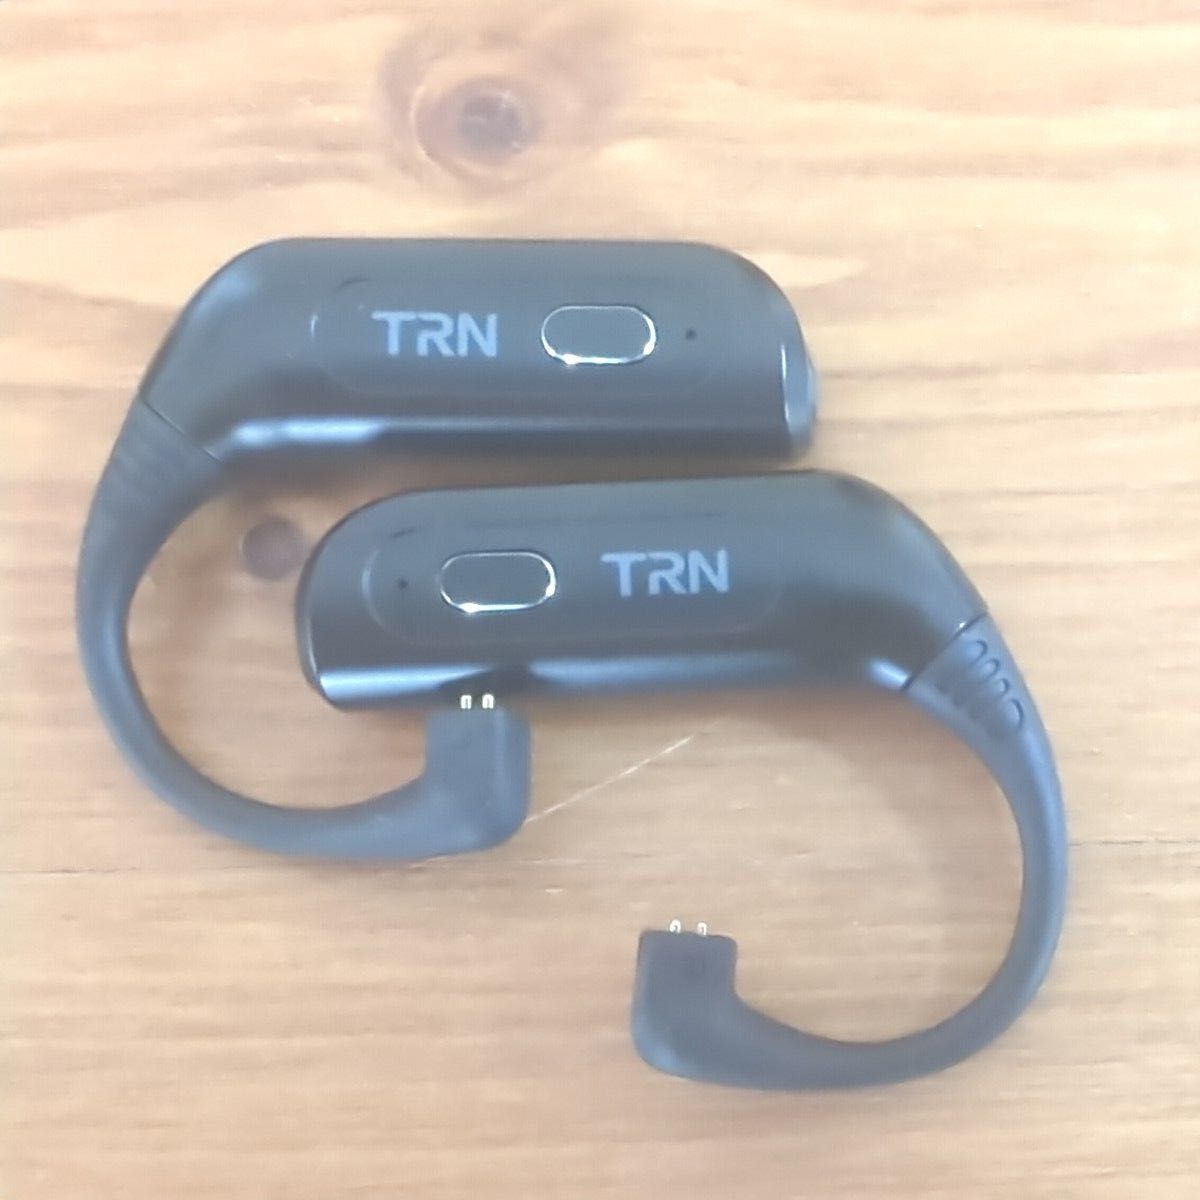  ☆タイムセール【中古・送料込】TRN BT30  Bluetoothレシーバー 